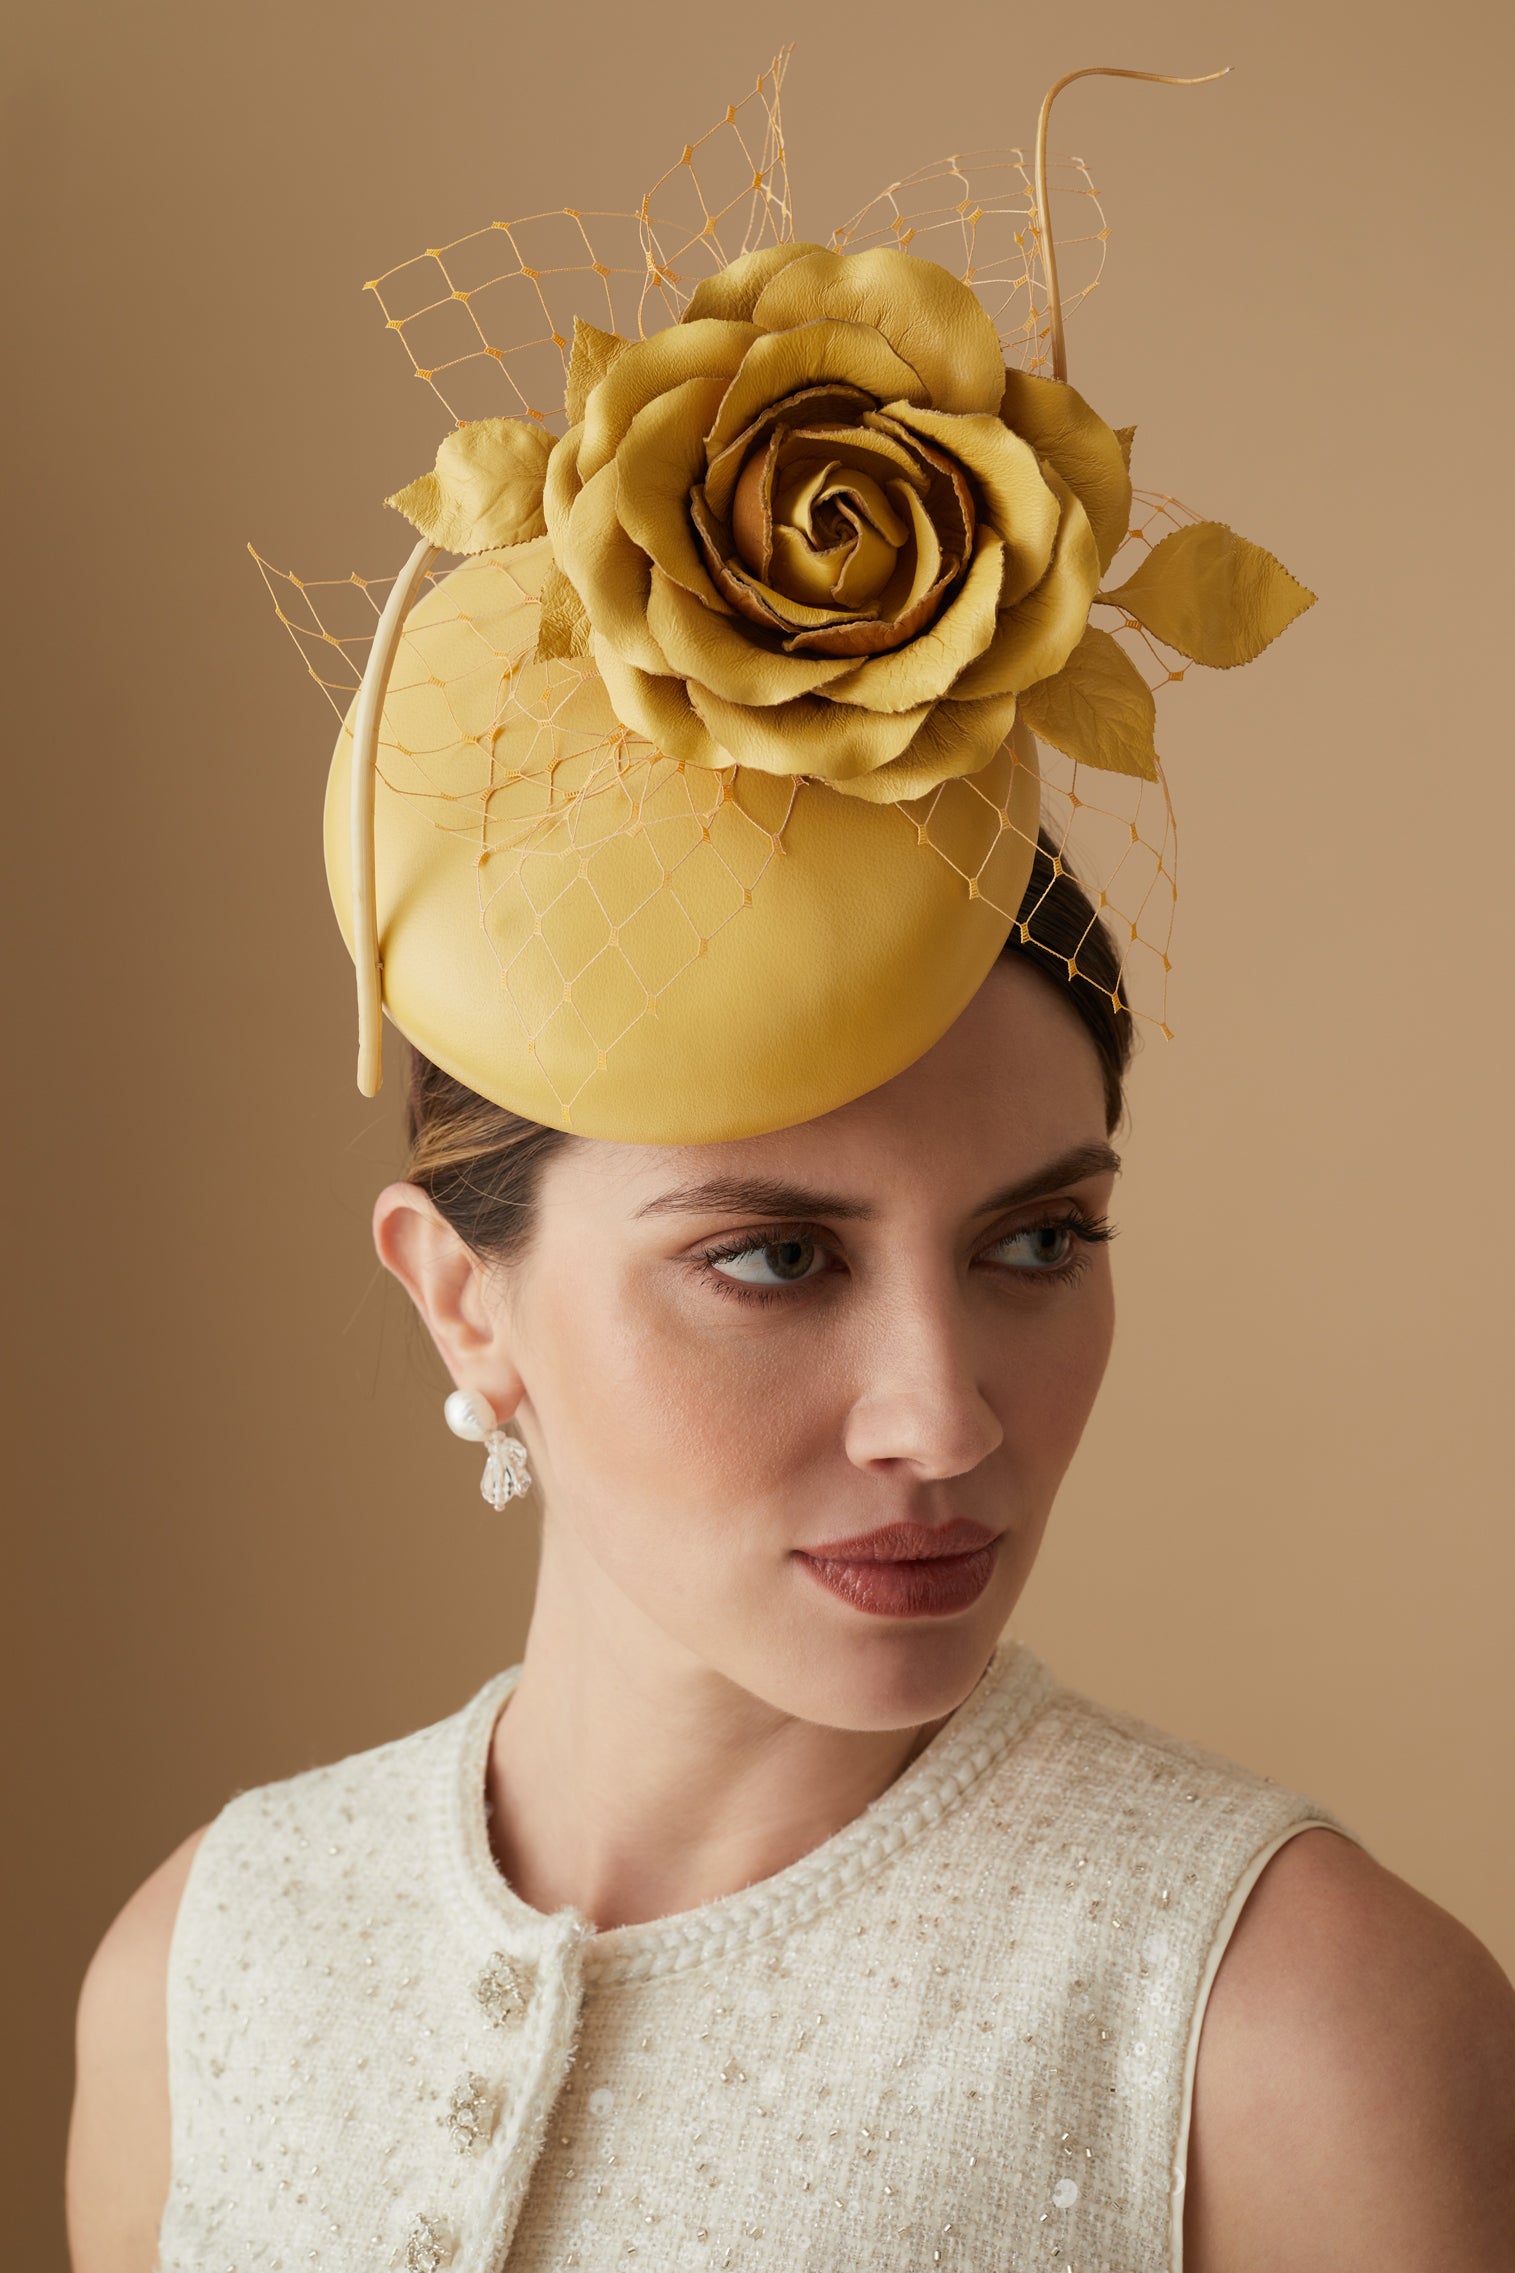 Rose Bud Yellow Leather Percher Hat - Women’s Hats - Lock & Co. Hatters London UK